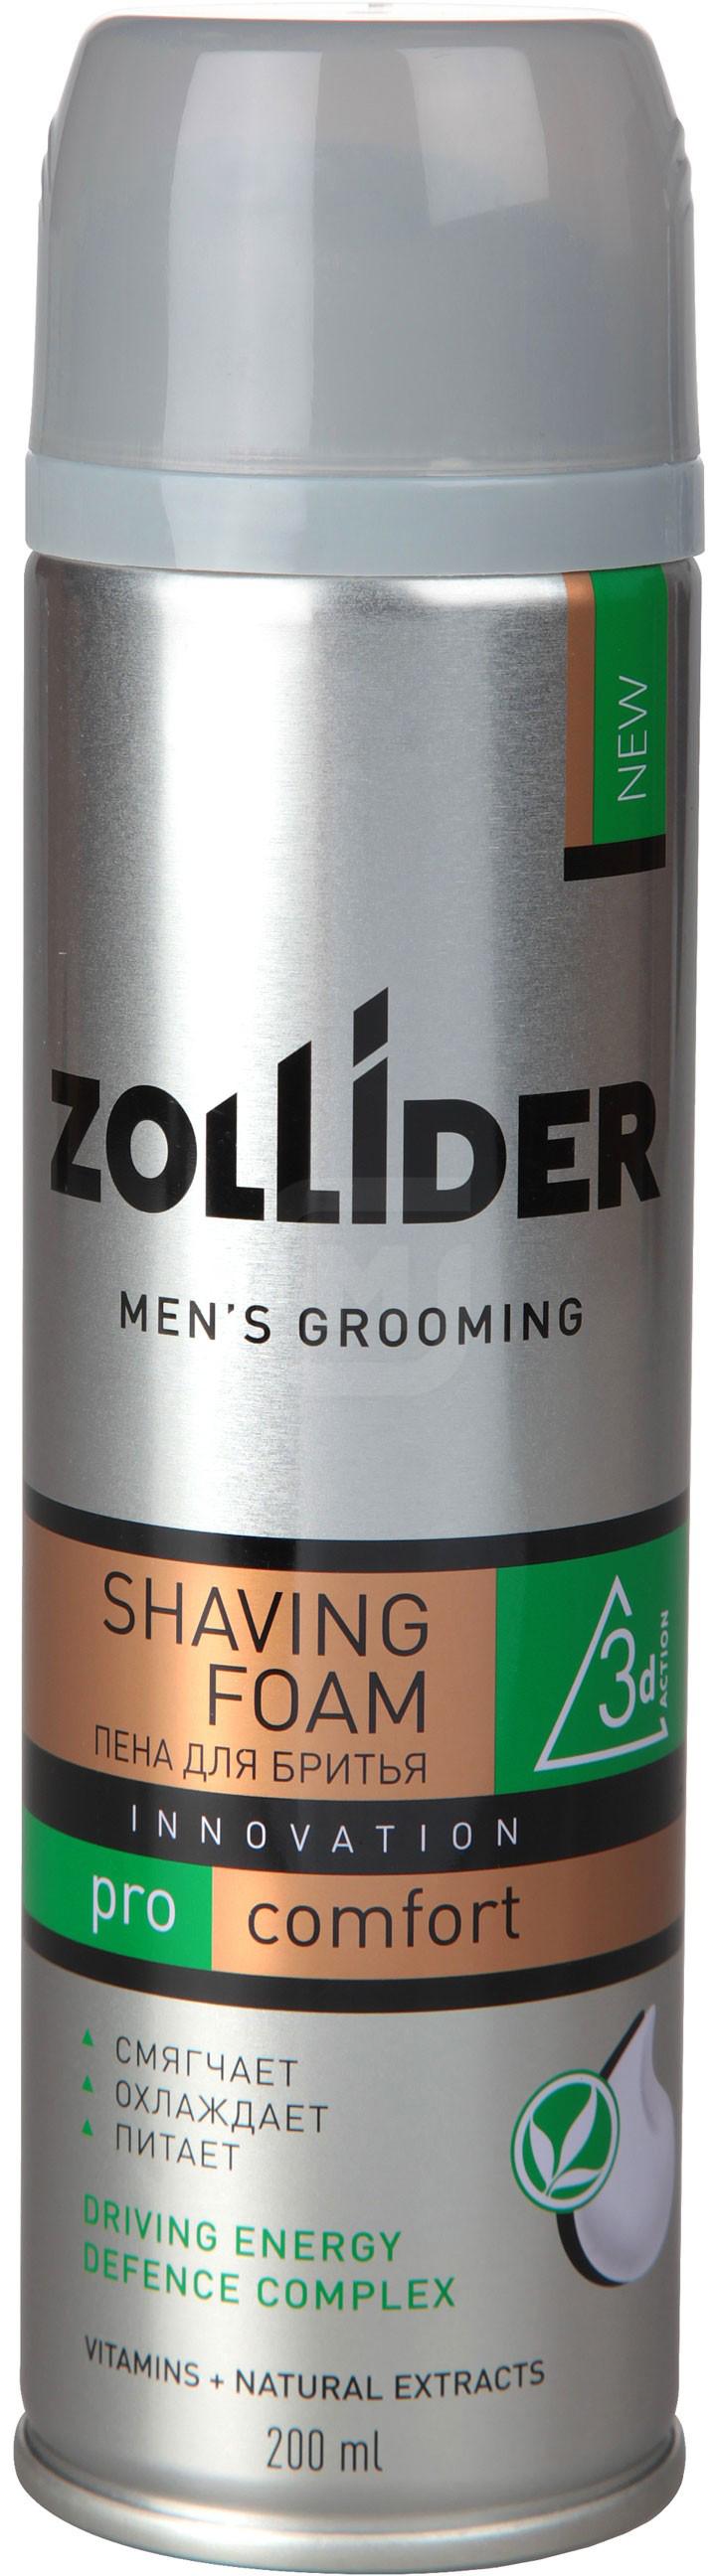 Купить Пена для бритья Zollider Pro Comfort мужская 200 мл